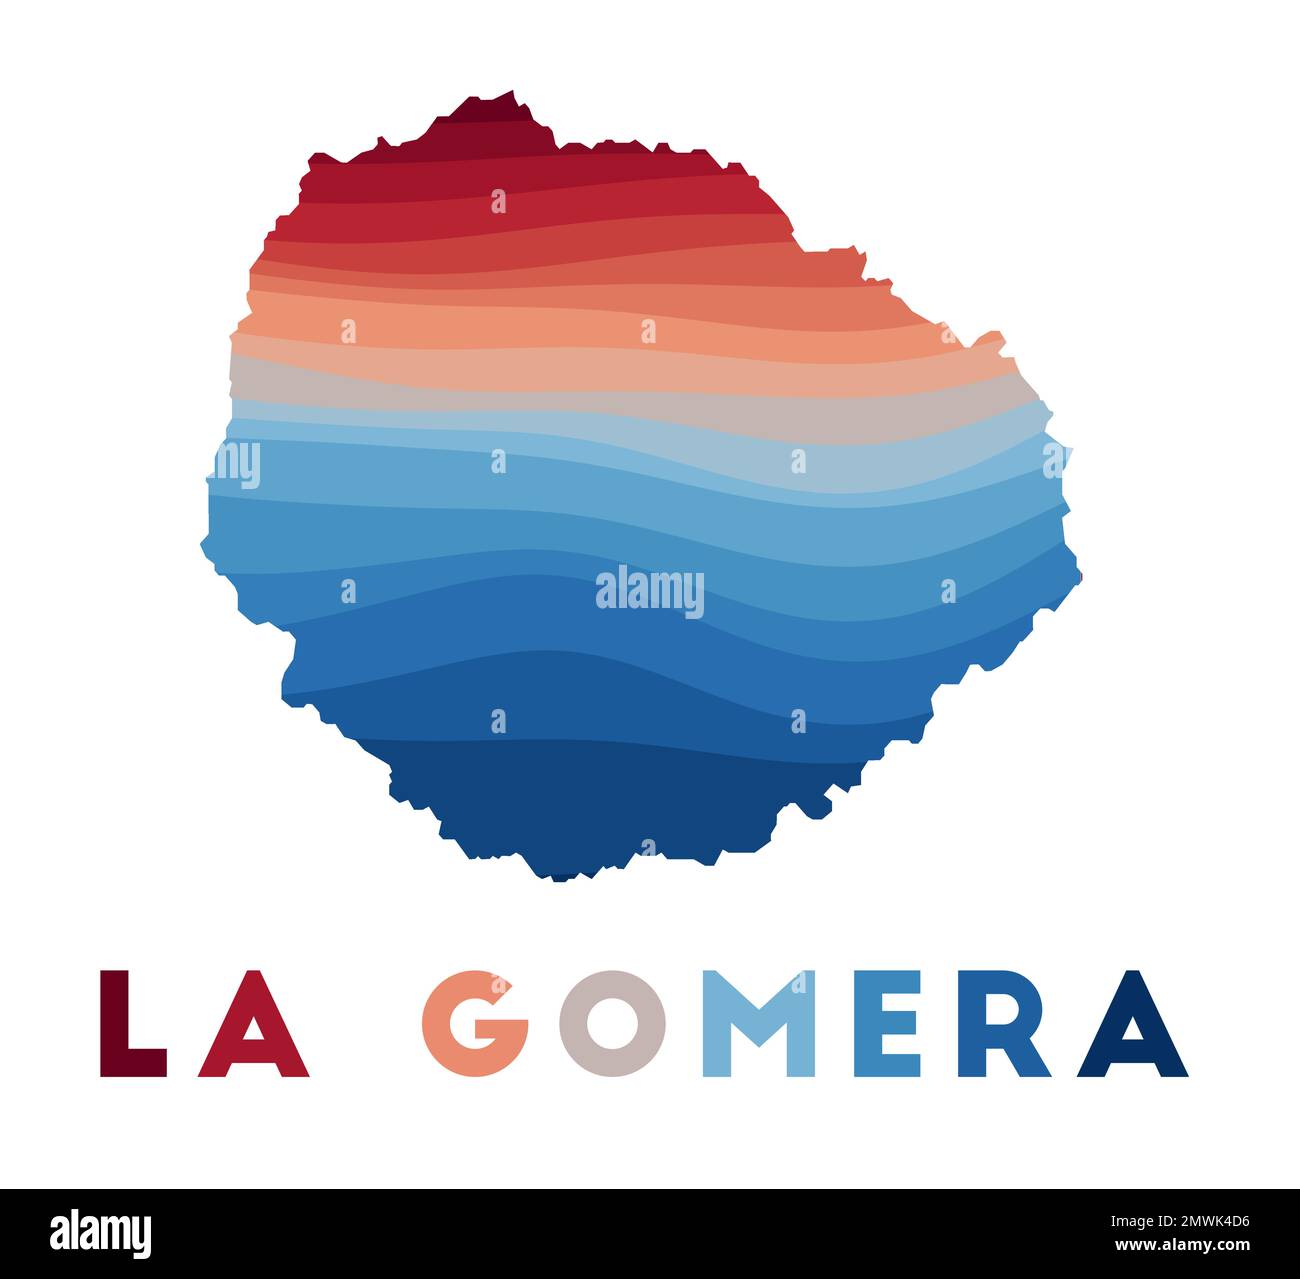 Karte von La Gomera. Karte der Insel mit wunderschönen geometrischen Wellen in rot-blauen Farben. Lebendige La Gomera-Form. Vektordarstellung. Stock Vektor